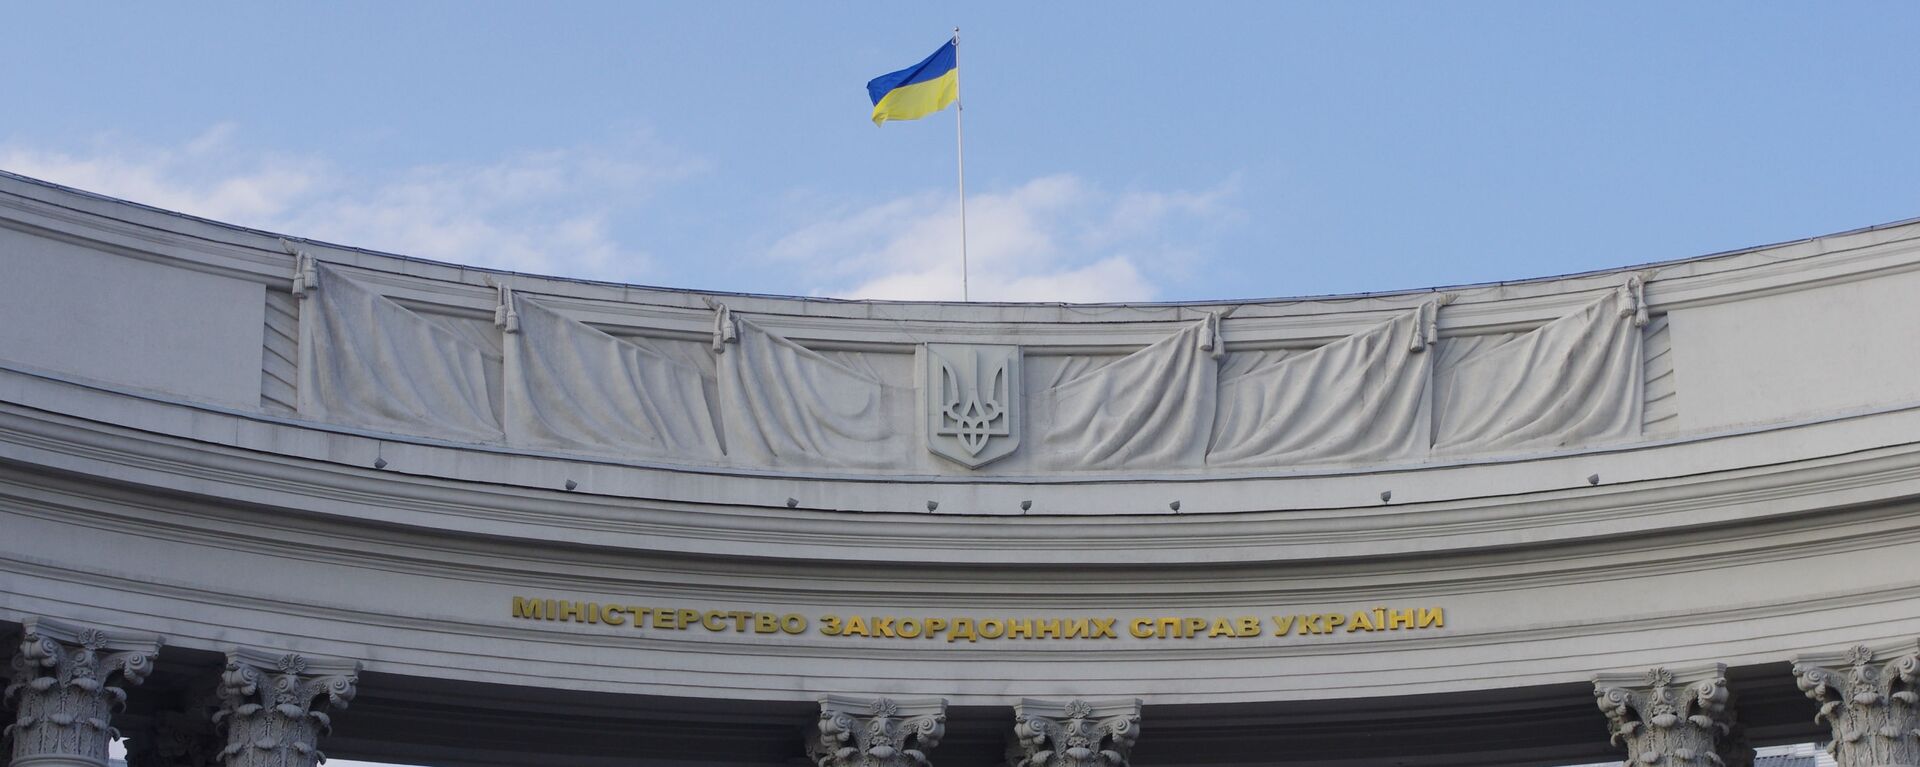 Valstybės vėliava ant Ukrainos užsienio reikalų ministerijos pastato Kijeve, archyvinė nuotrauka - Sputnik Lietuva, 1920, 05.07.2021